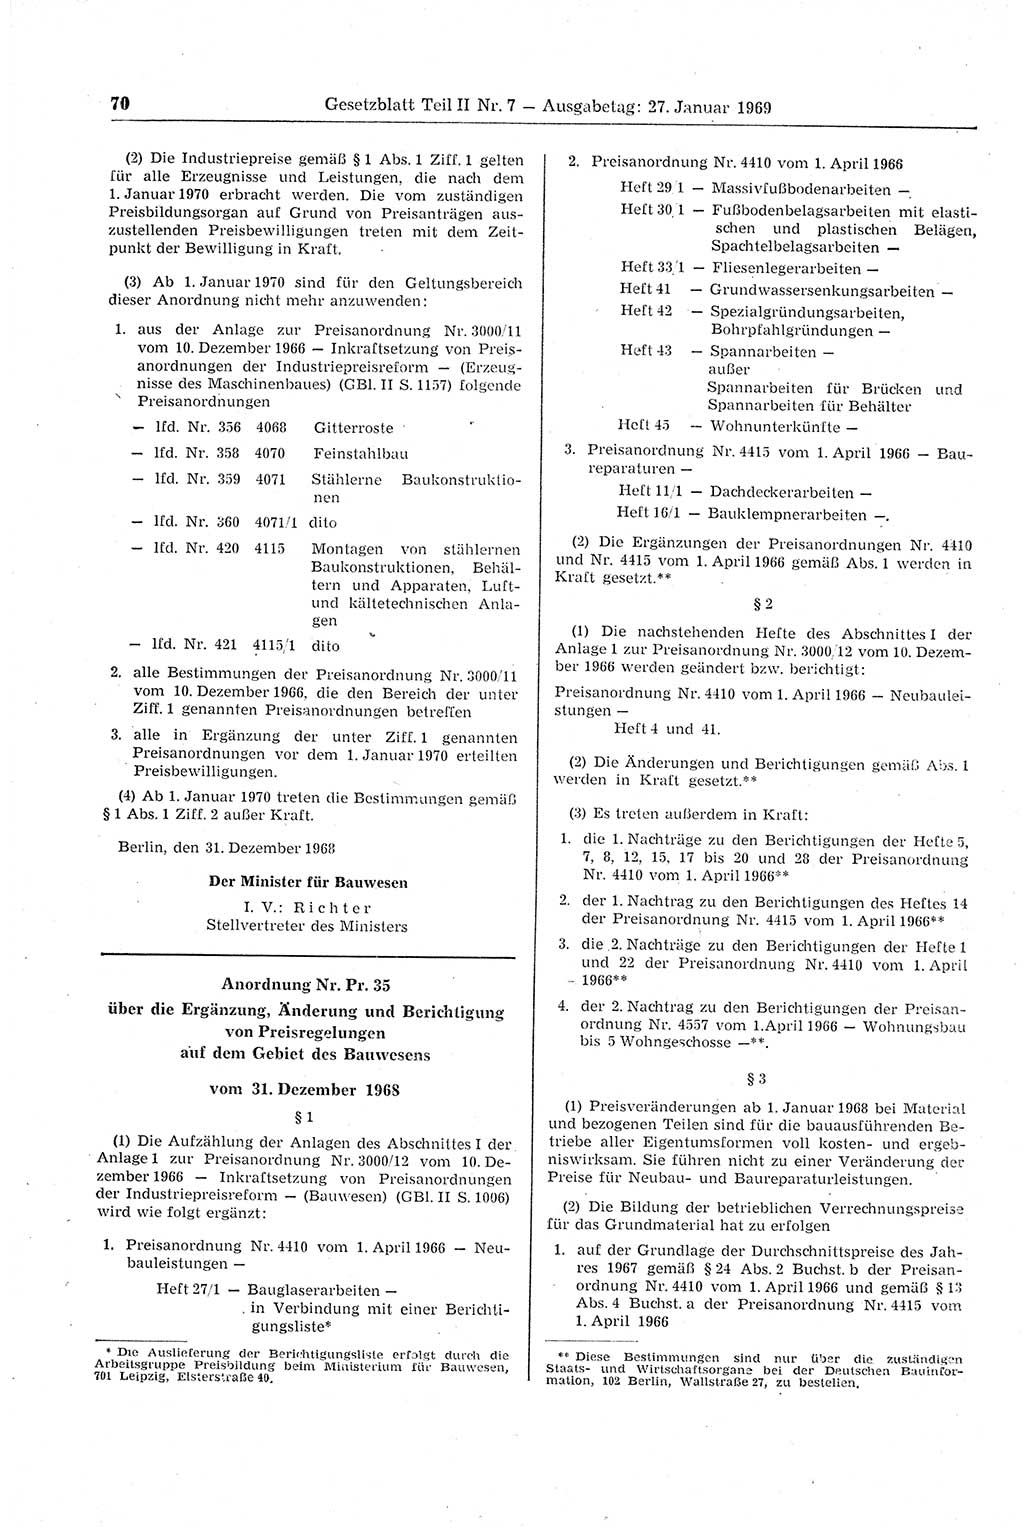 Gesetzblatt (GBl.) der Deutschen Demokratischen Republik (DDR) Teil ⅠⅠ 1969, Seite 70 (GBl. DDR ⅠⅠ 1969, S. 70)